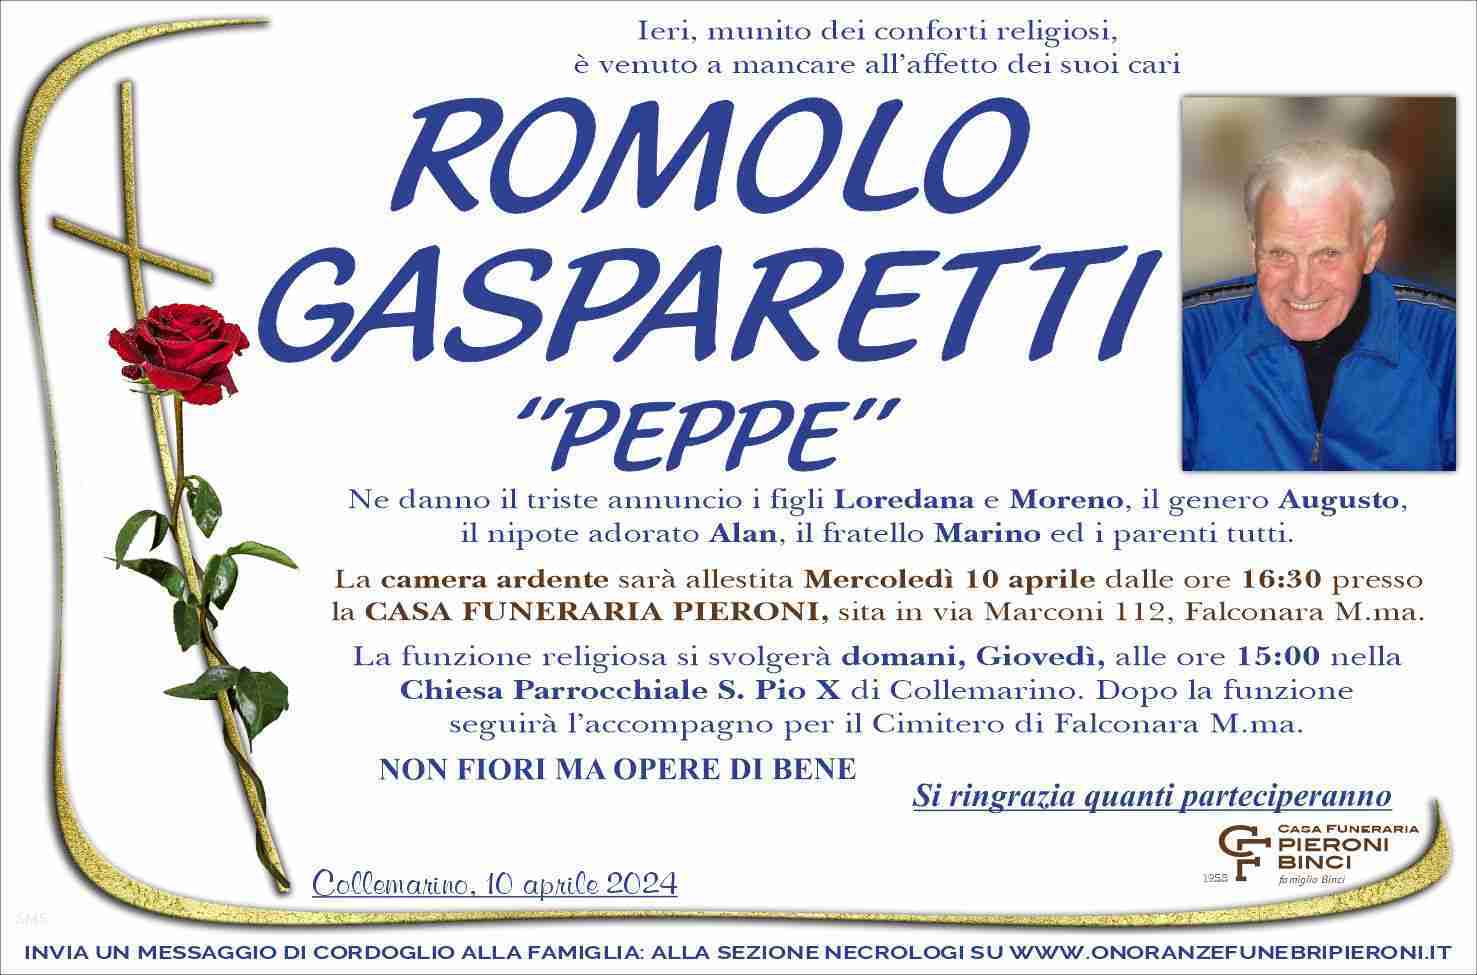 Romolo Gasparetti